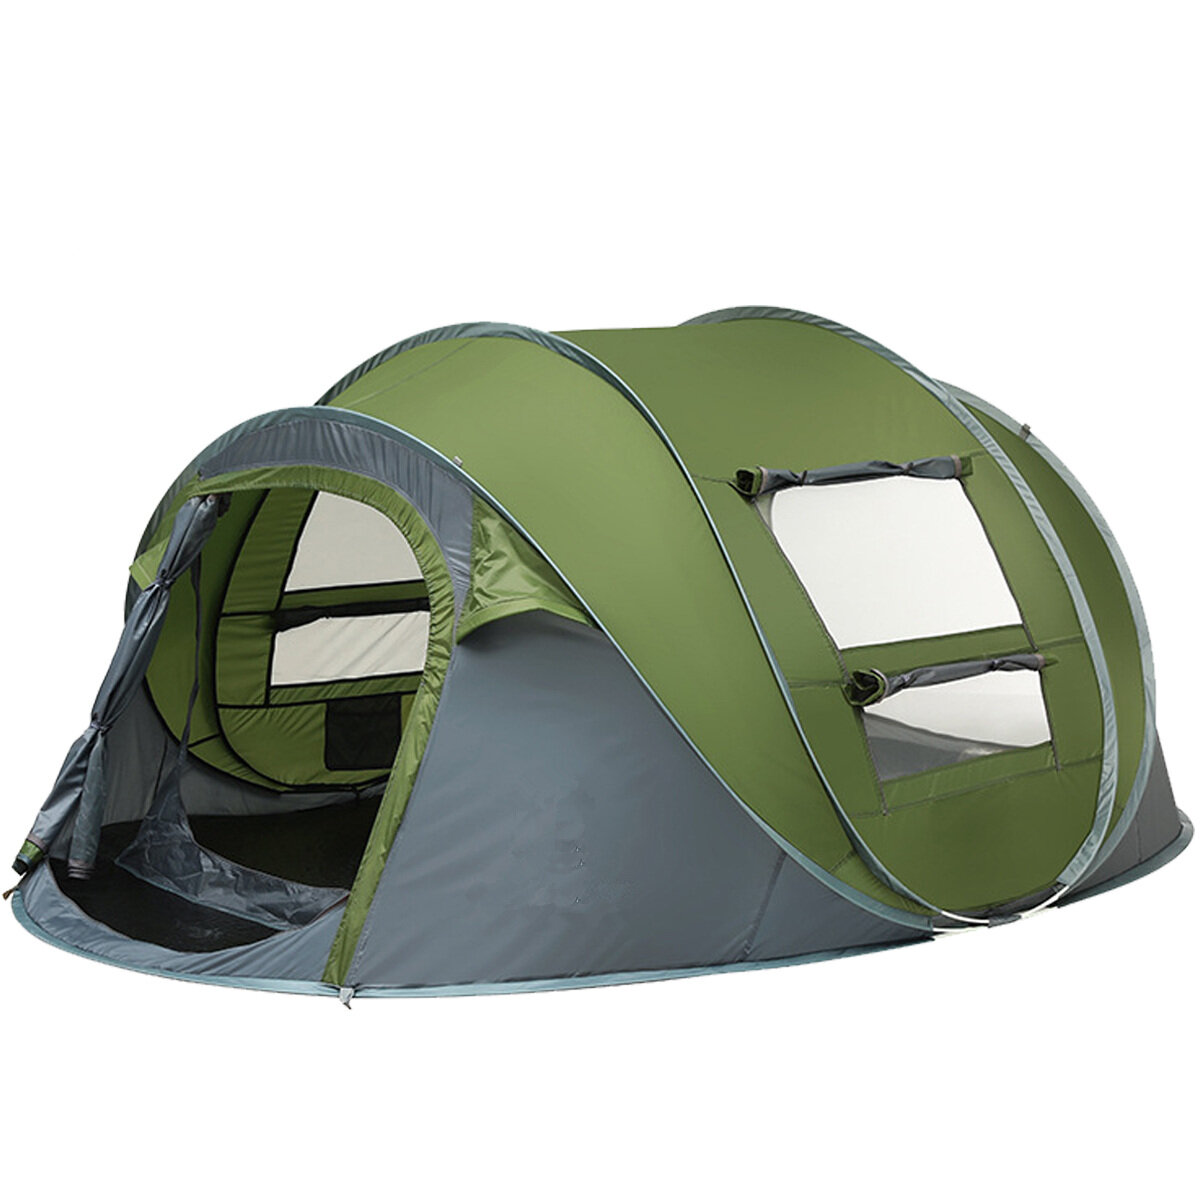 Tente de camping pour 3-4/5-8 personnes avec double porte, respirante, automatique, imperméable, avec auvent pour se protéger du soleil, idéale pour le camping, la randonnée ou la plage.